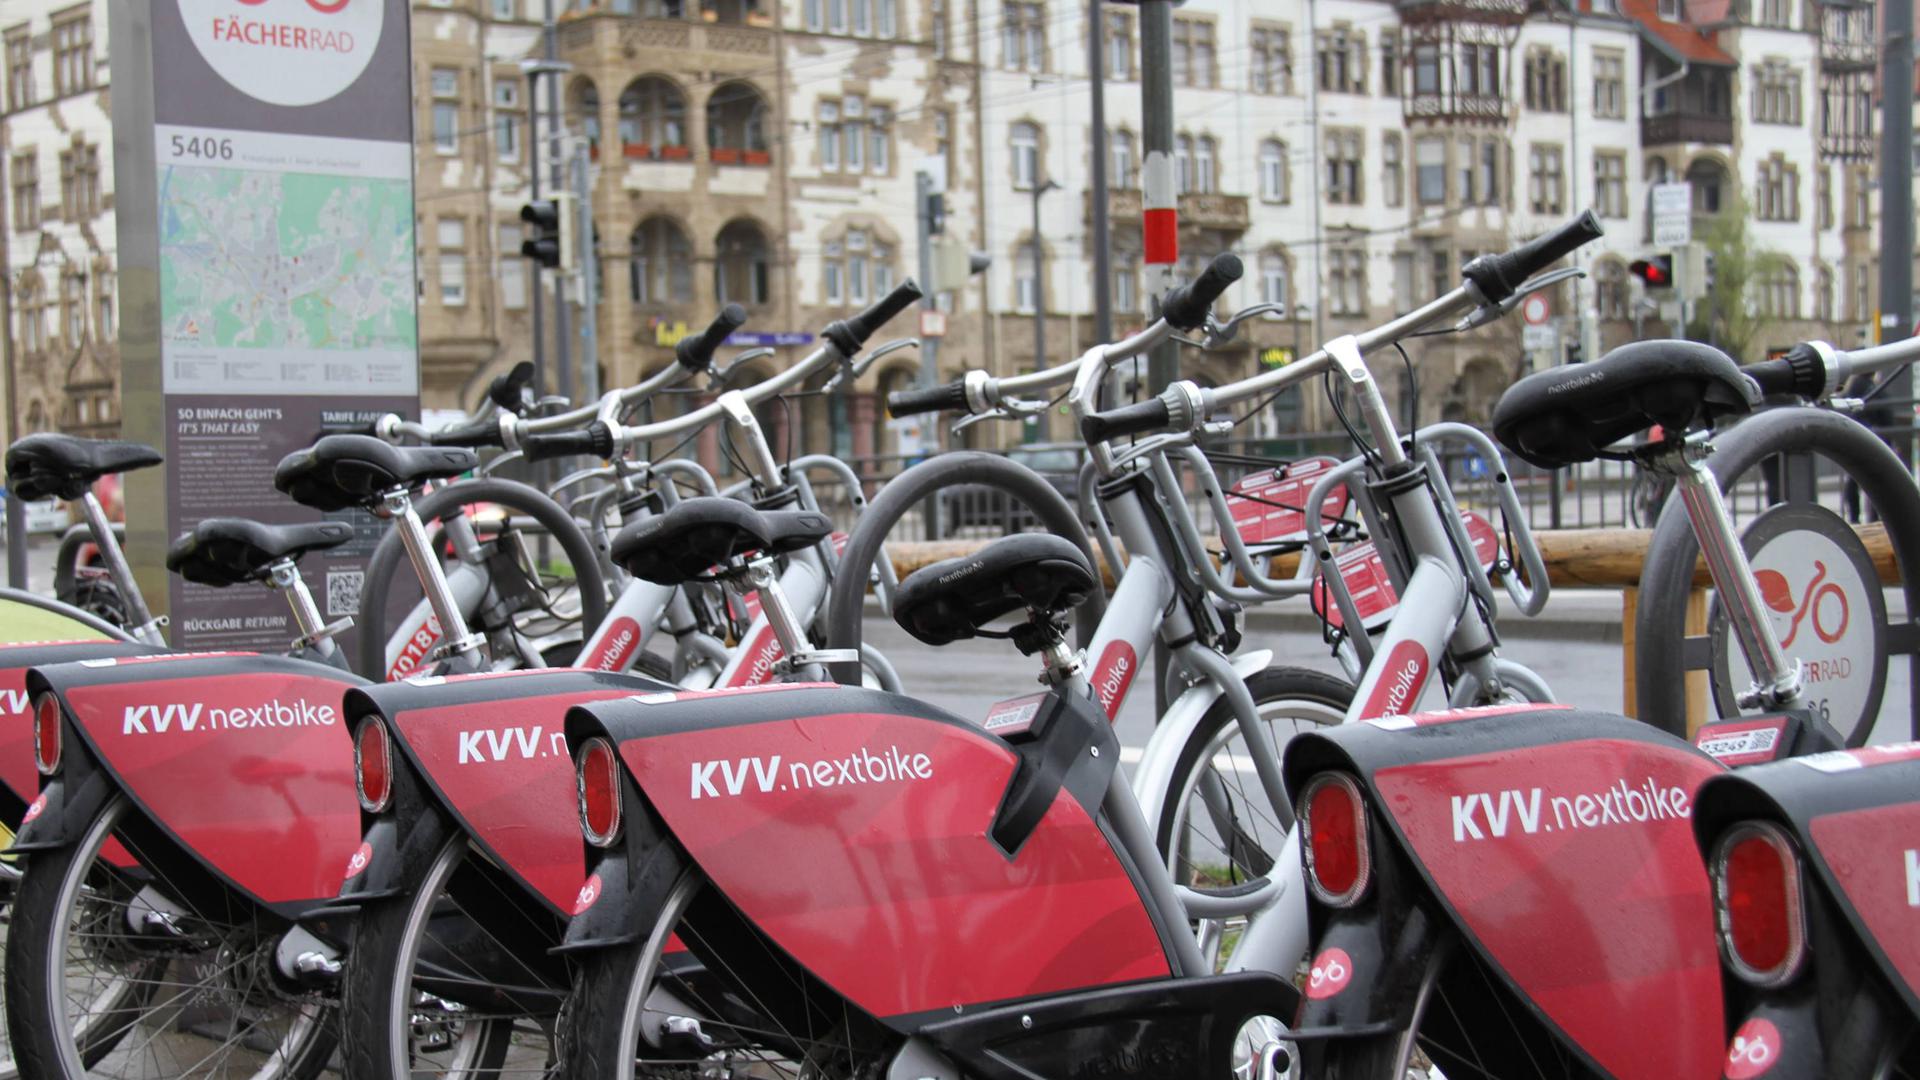 Früher Fächerrad, dann „KVV.nextbike“: Seit 2019 sind die Leihfahrräder in Karlsruhe unter diesem Namen bekannt. Nun übernimmt das Mobilitätsunternehmen „Tier“ den Fahrradverleiher.